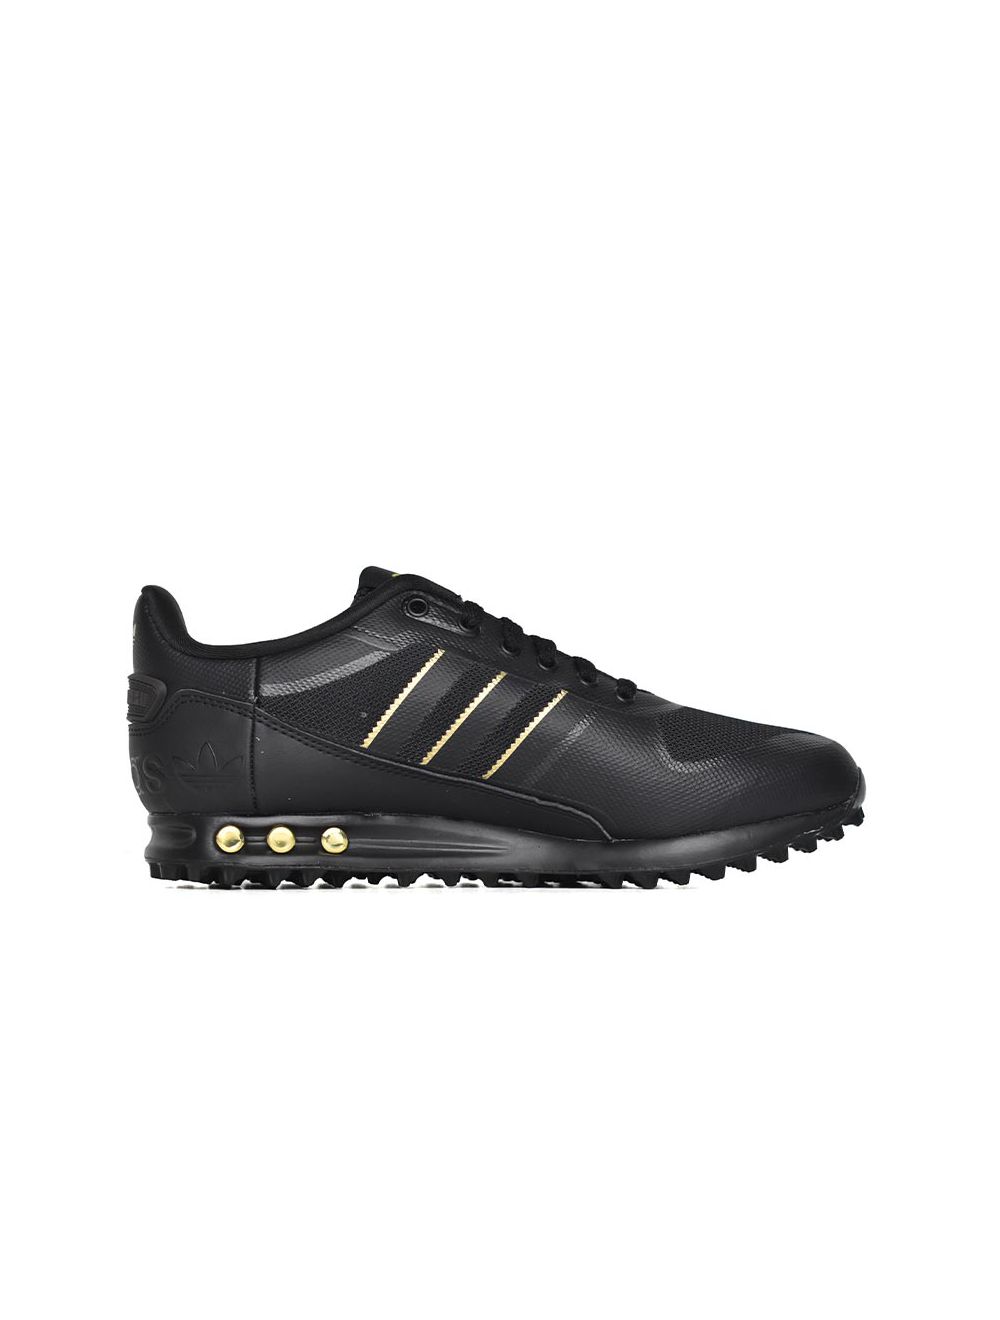 adidas Originals LA Trainer 2 Sneaker Mens Black Gold